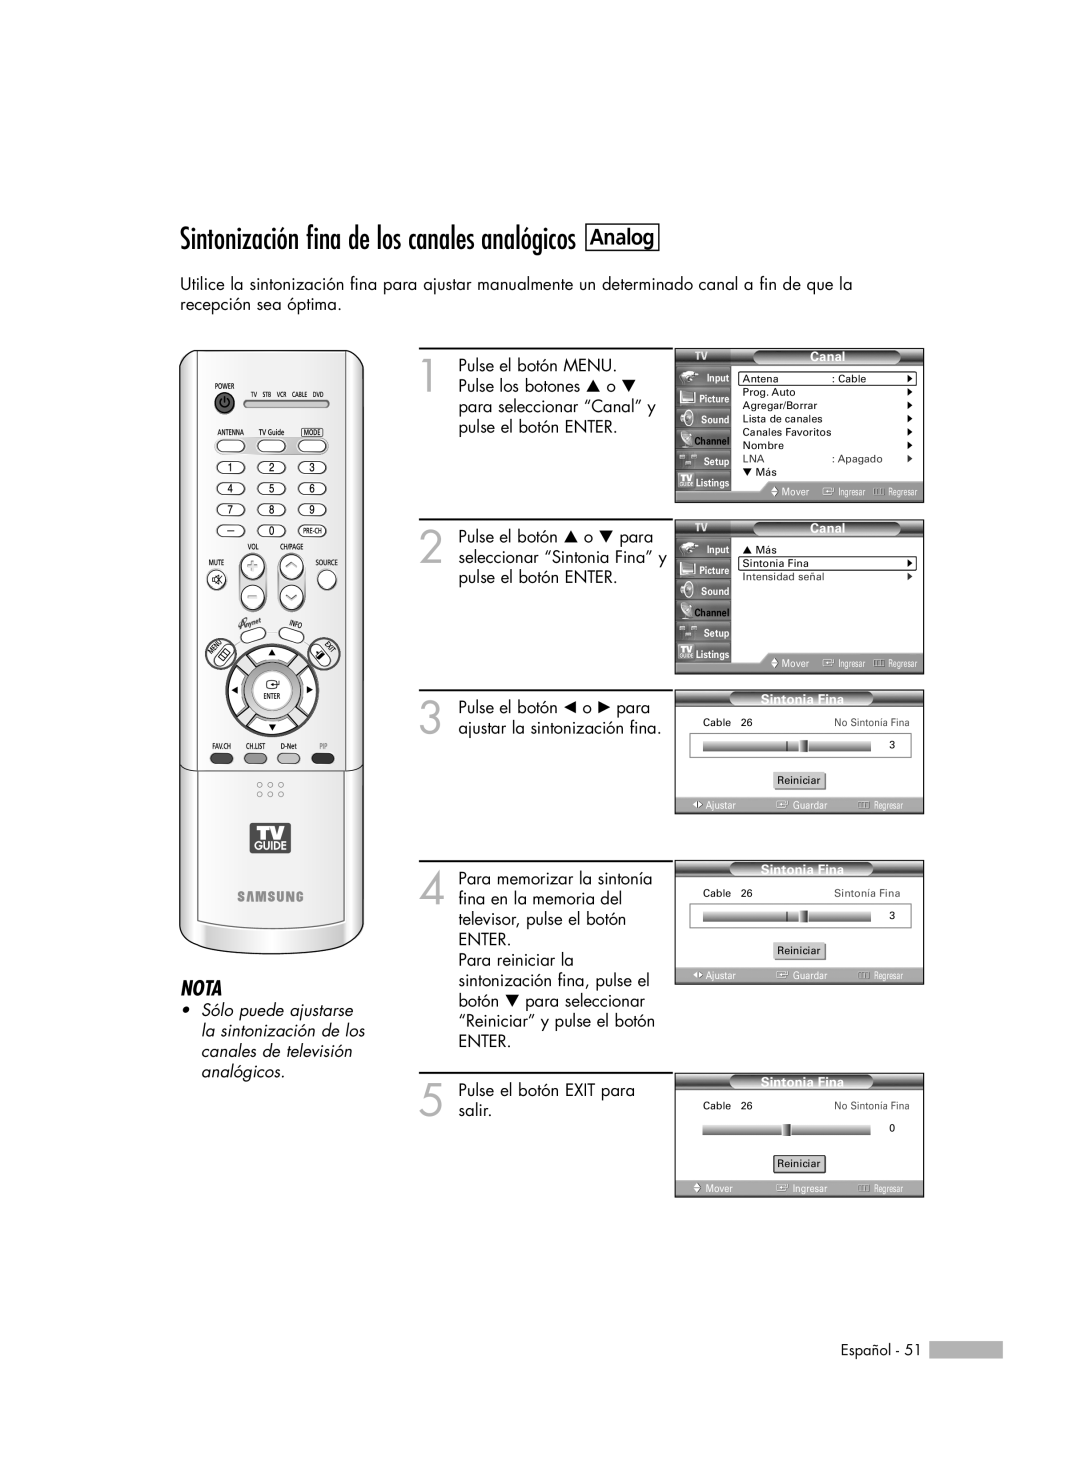 Samsung HL-R7178W, HL-R6178W, HL-R5078W, HL-R5678W manual Analog, Sintonización fina de los canales analógicos, Nota 